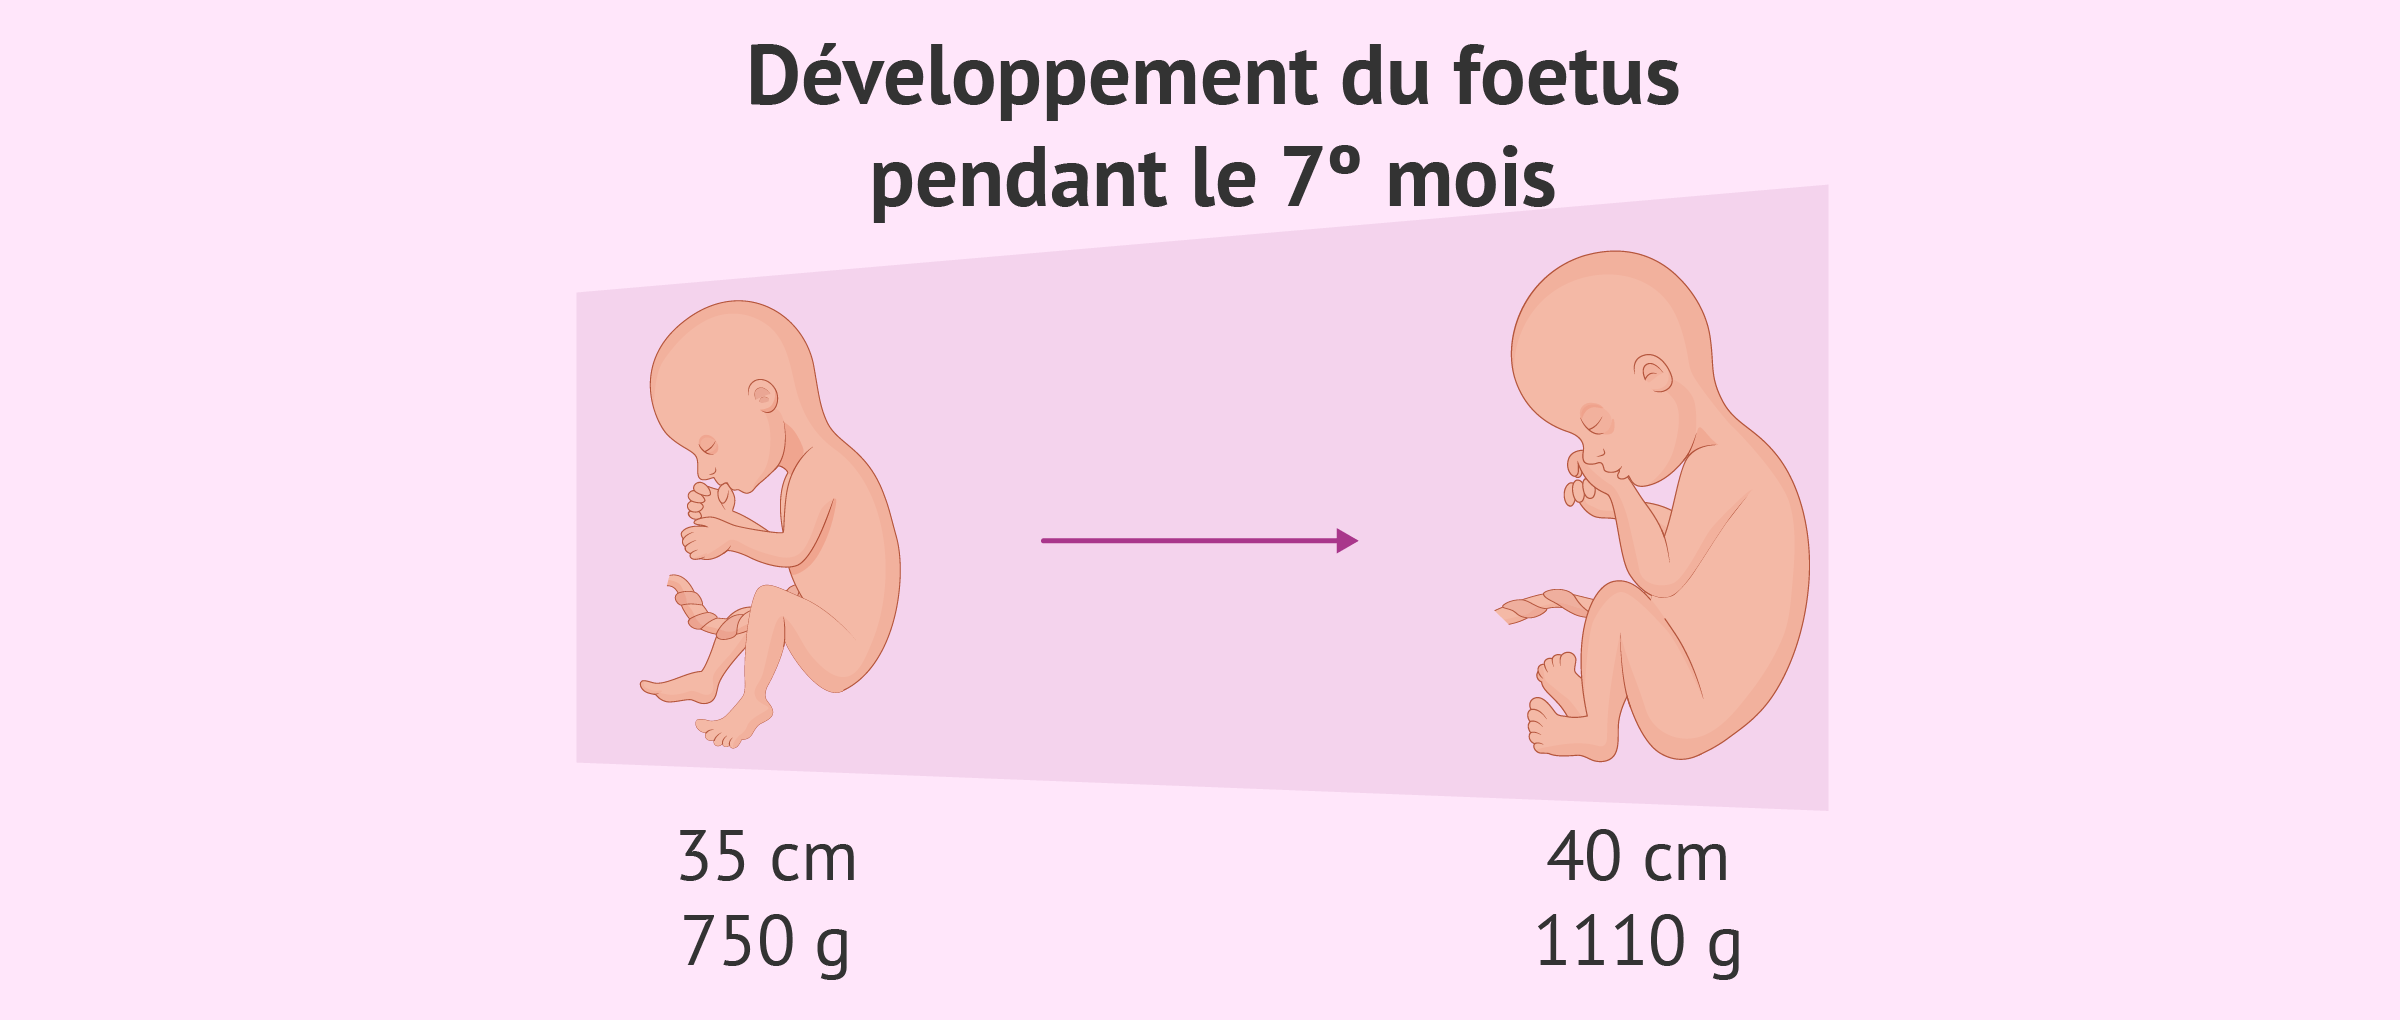 Développement du foetus pendant le septième mois de grossesse